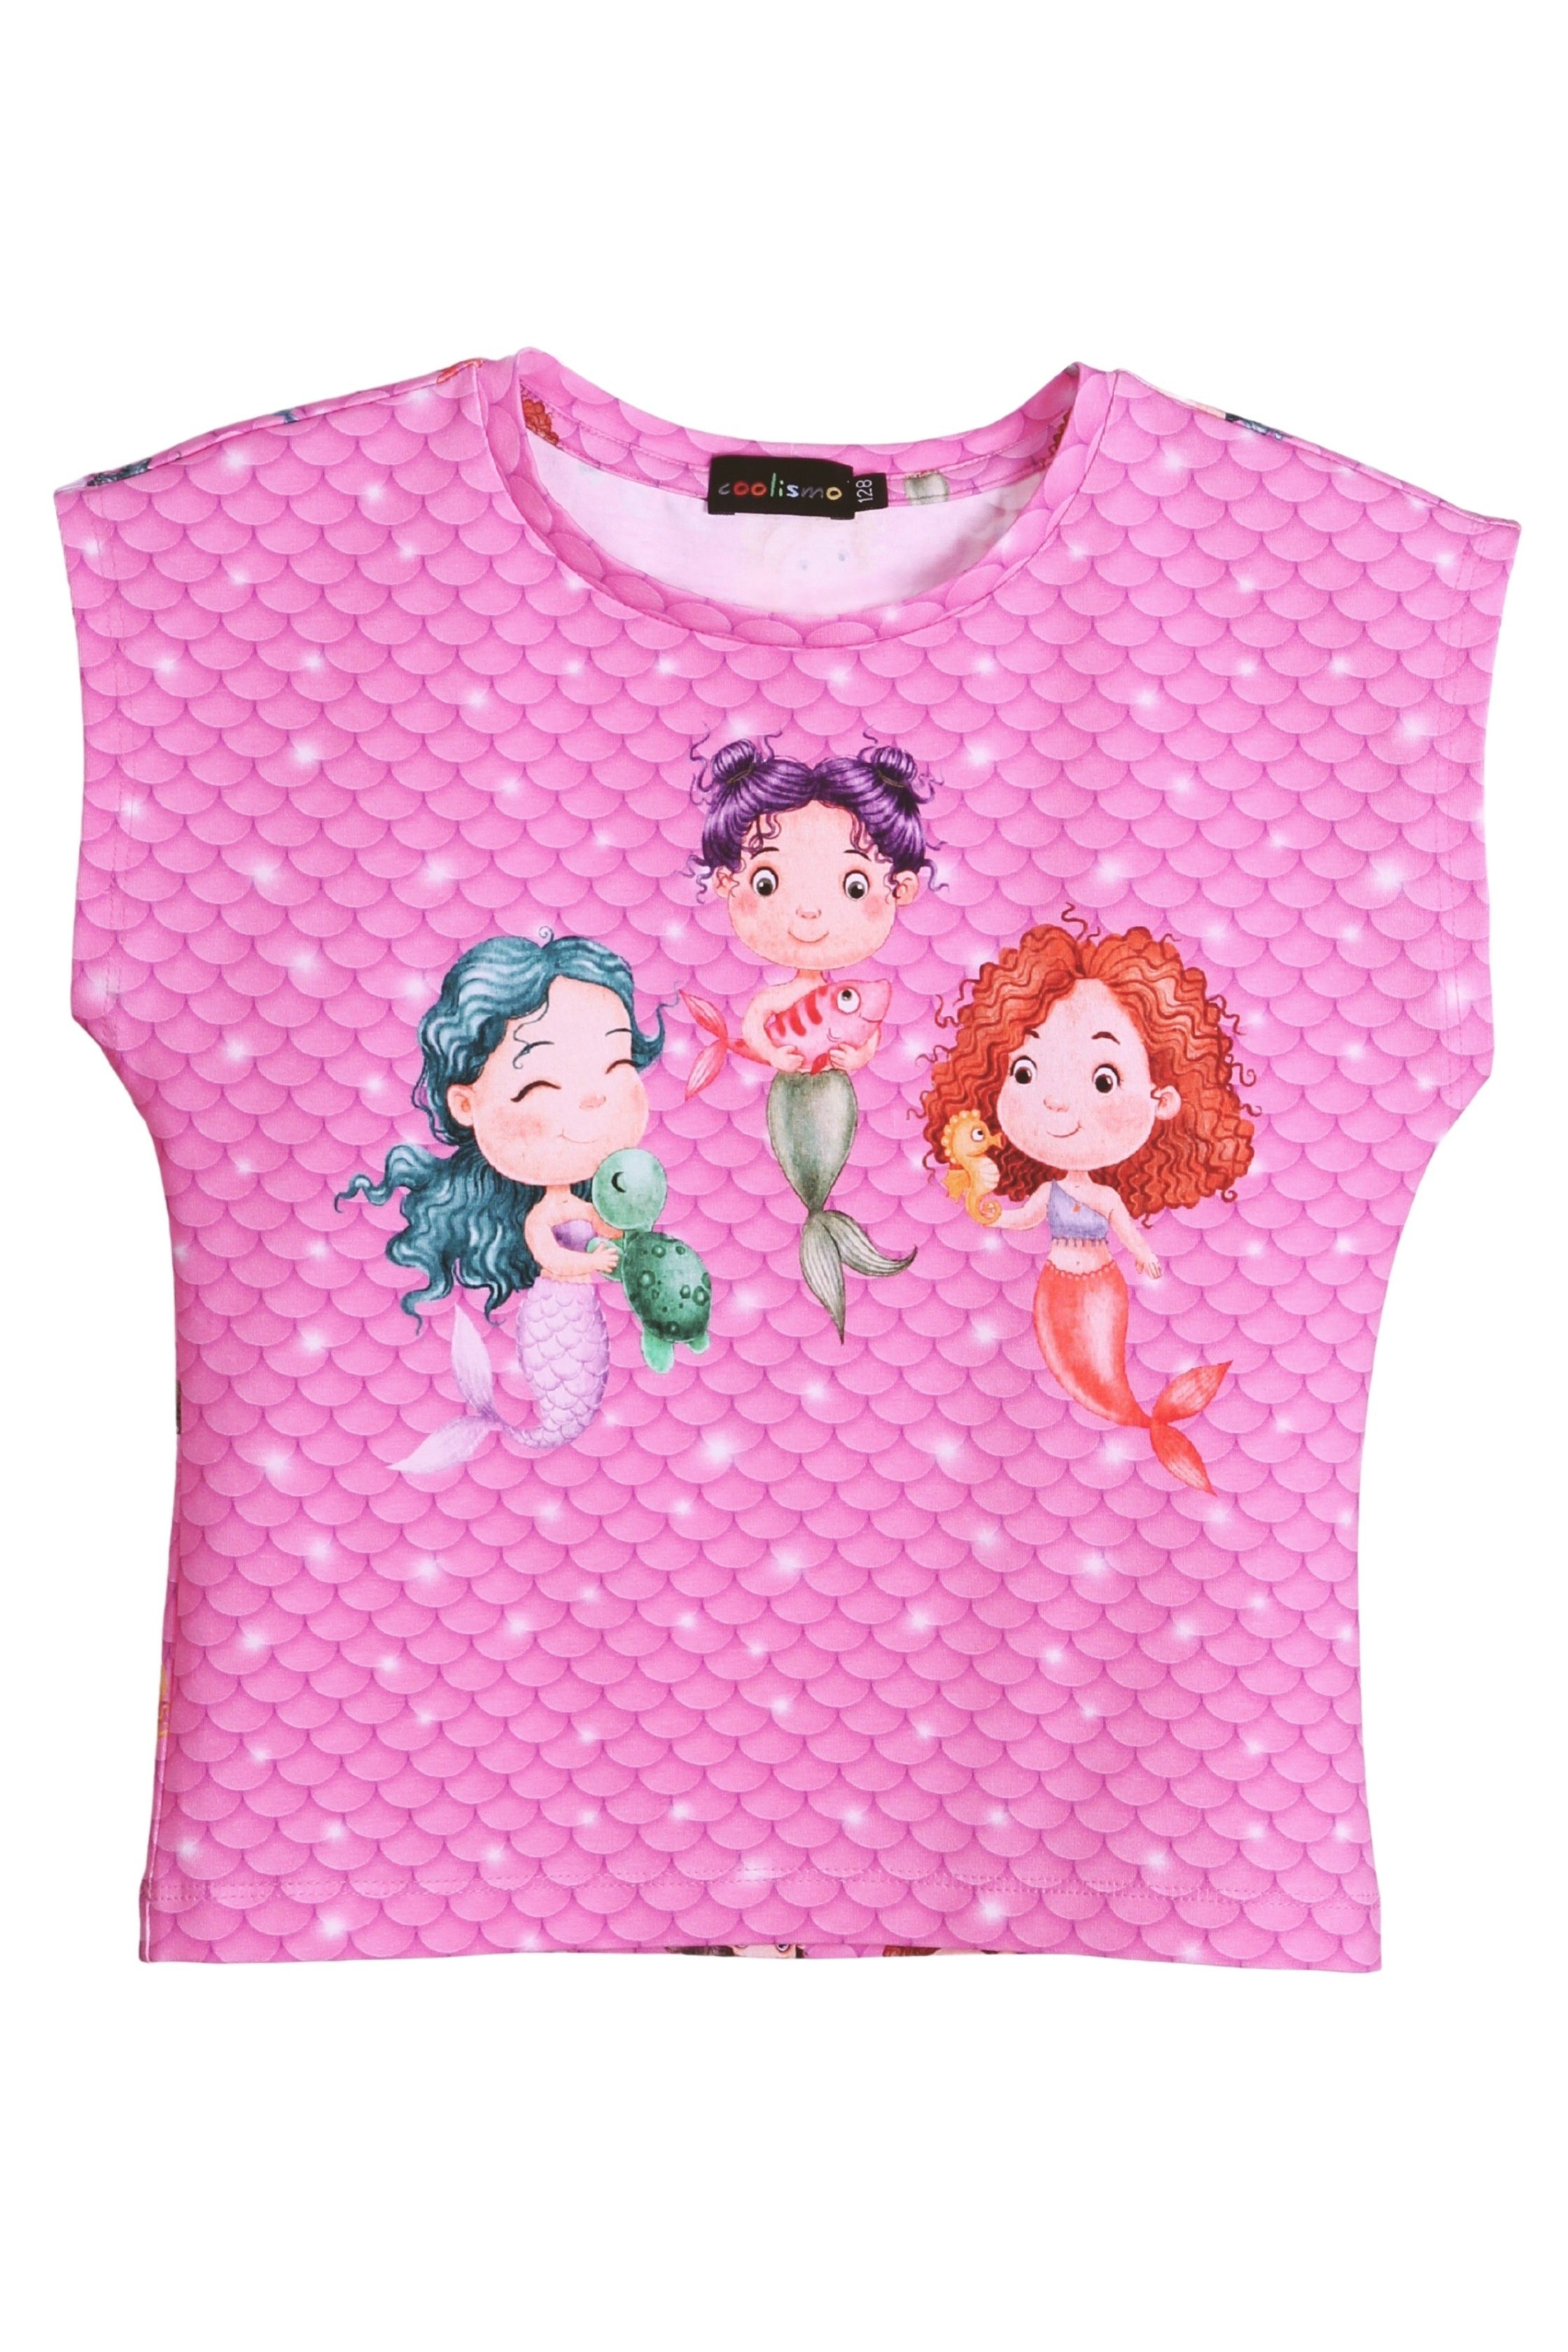 für Motiv Meerjungfrau Produktion T-Shirt Print-Shirt Baumwolle, coolismo Mädchen europäische